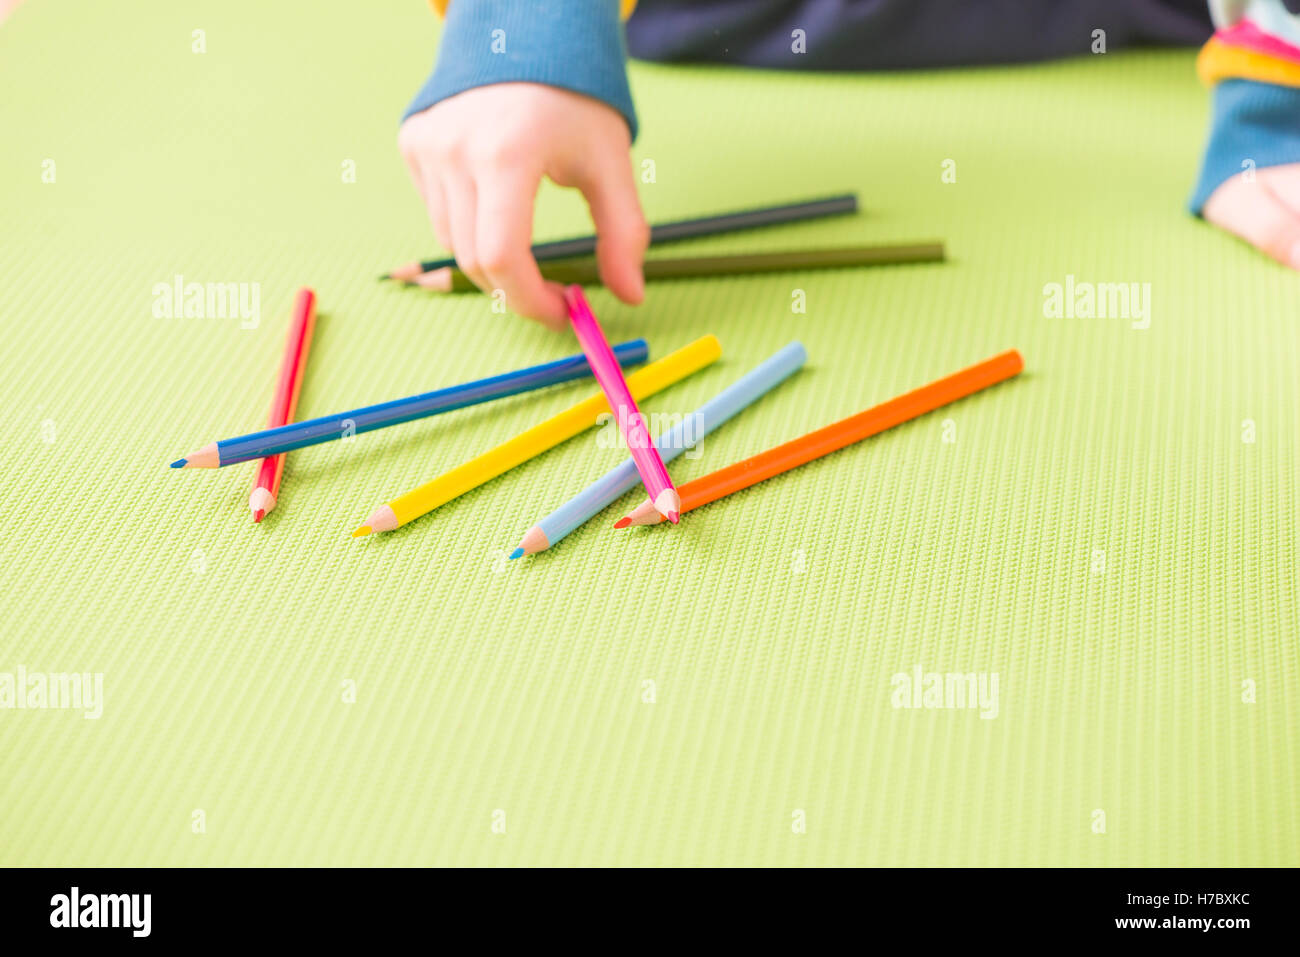 Bambino scegliere dalle matite colorate. Concetto di creatività infantile, disegno e divertente l'istruzione. Foto Stock